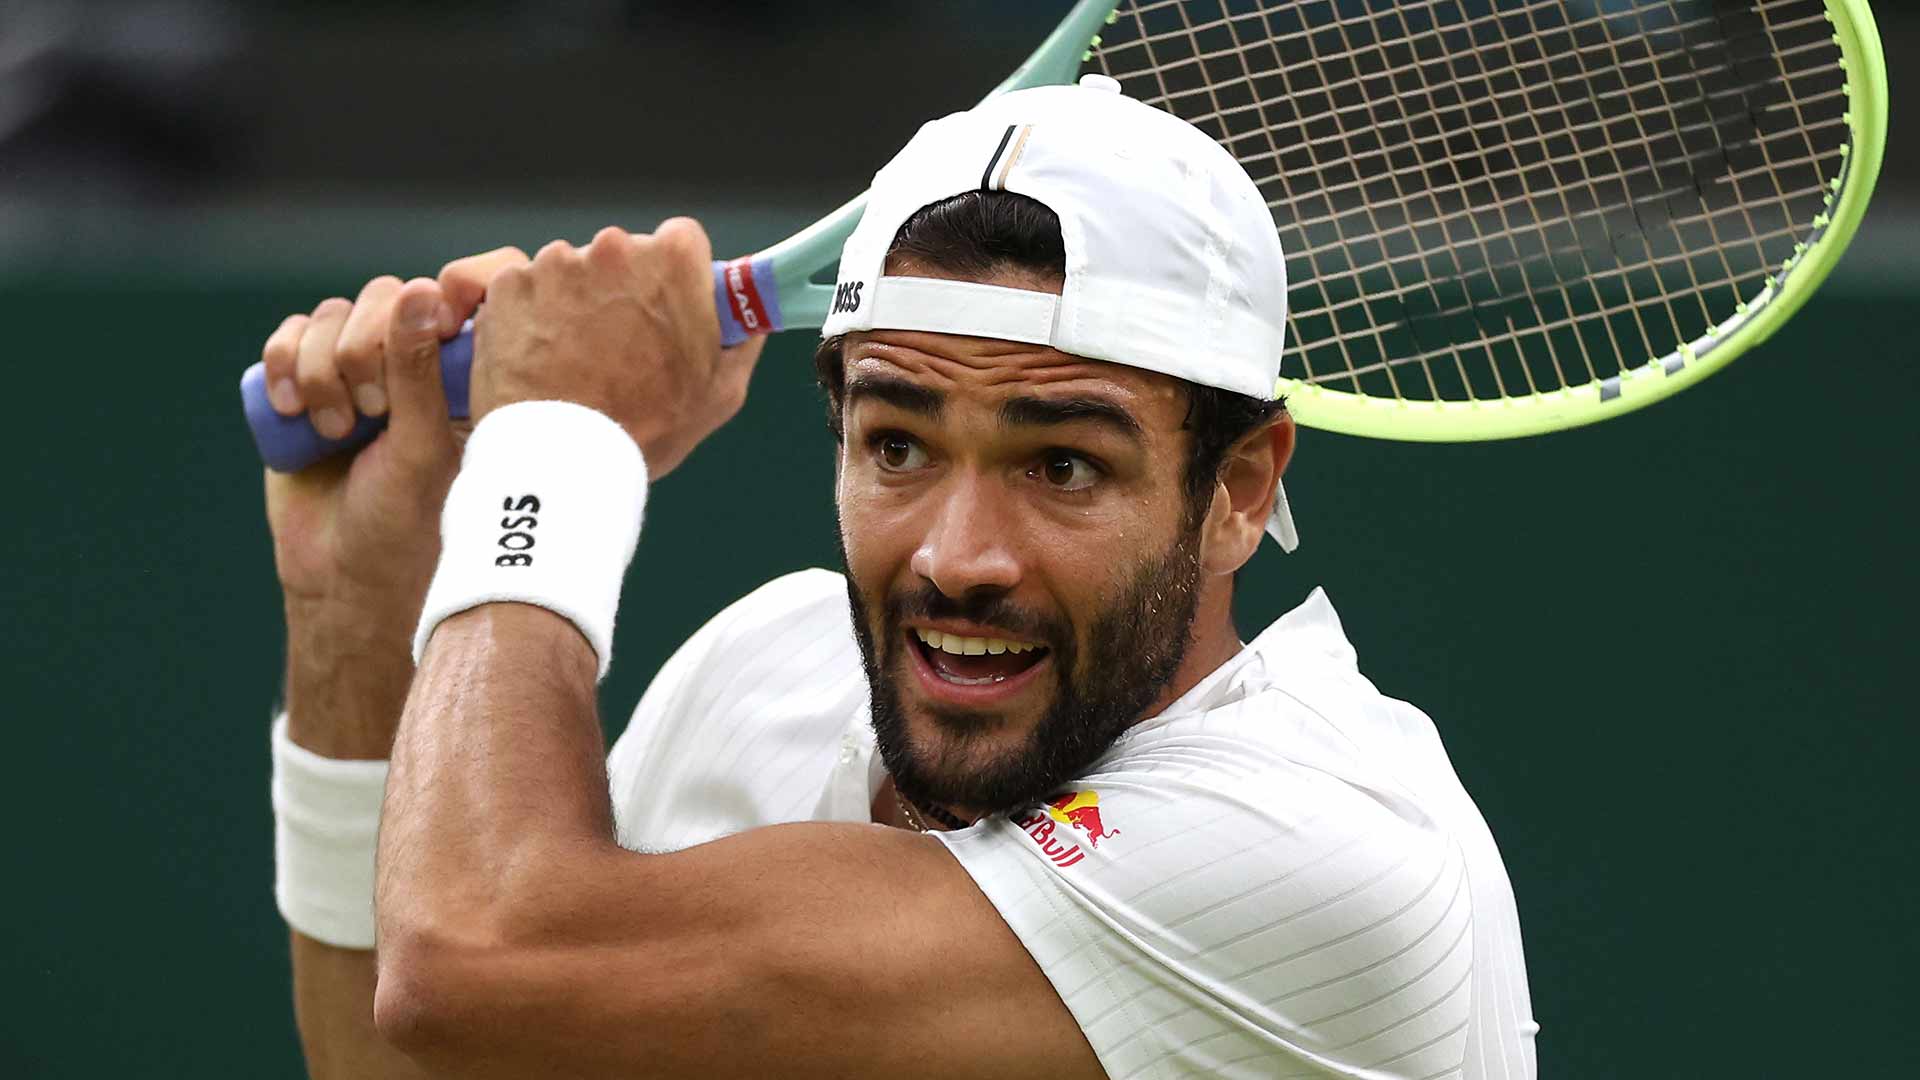 Matteo Berrettini reached the Wimbledon final in 2021.